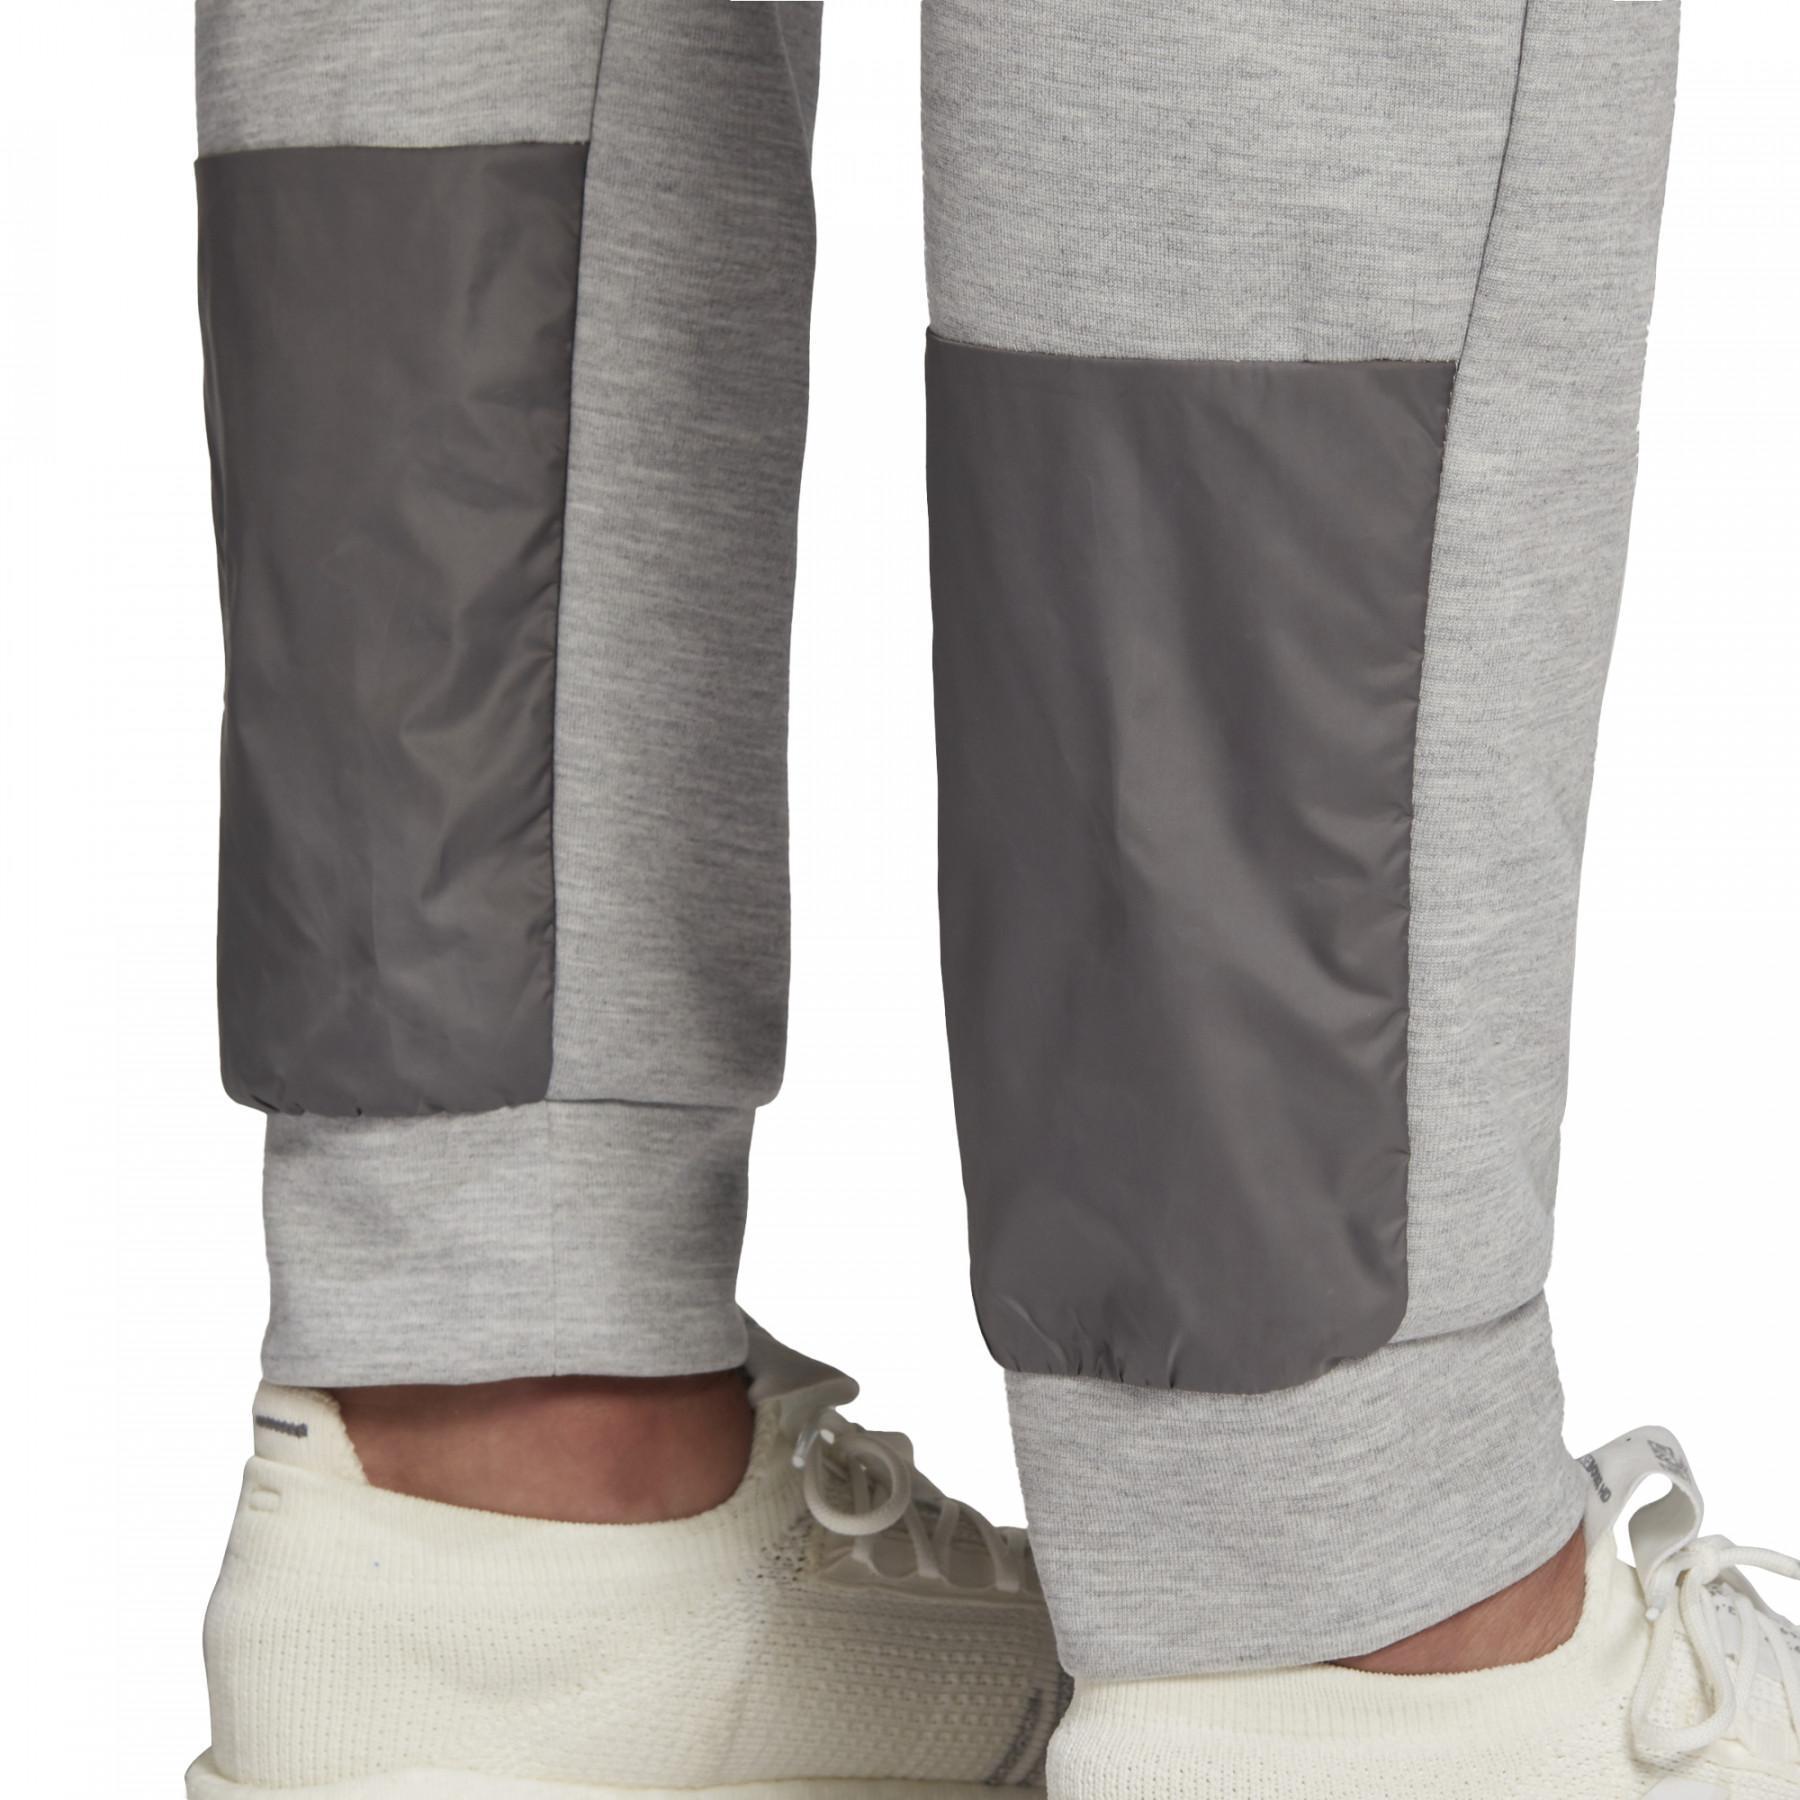 Pantalon adidas Aeroready Fabric Mix